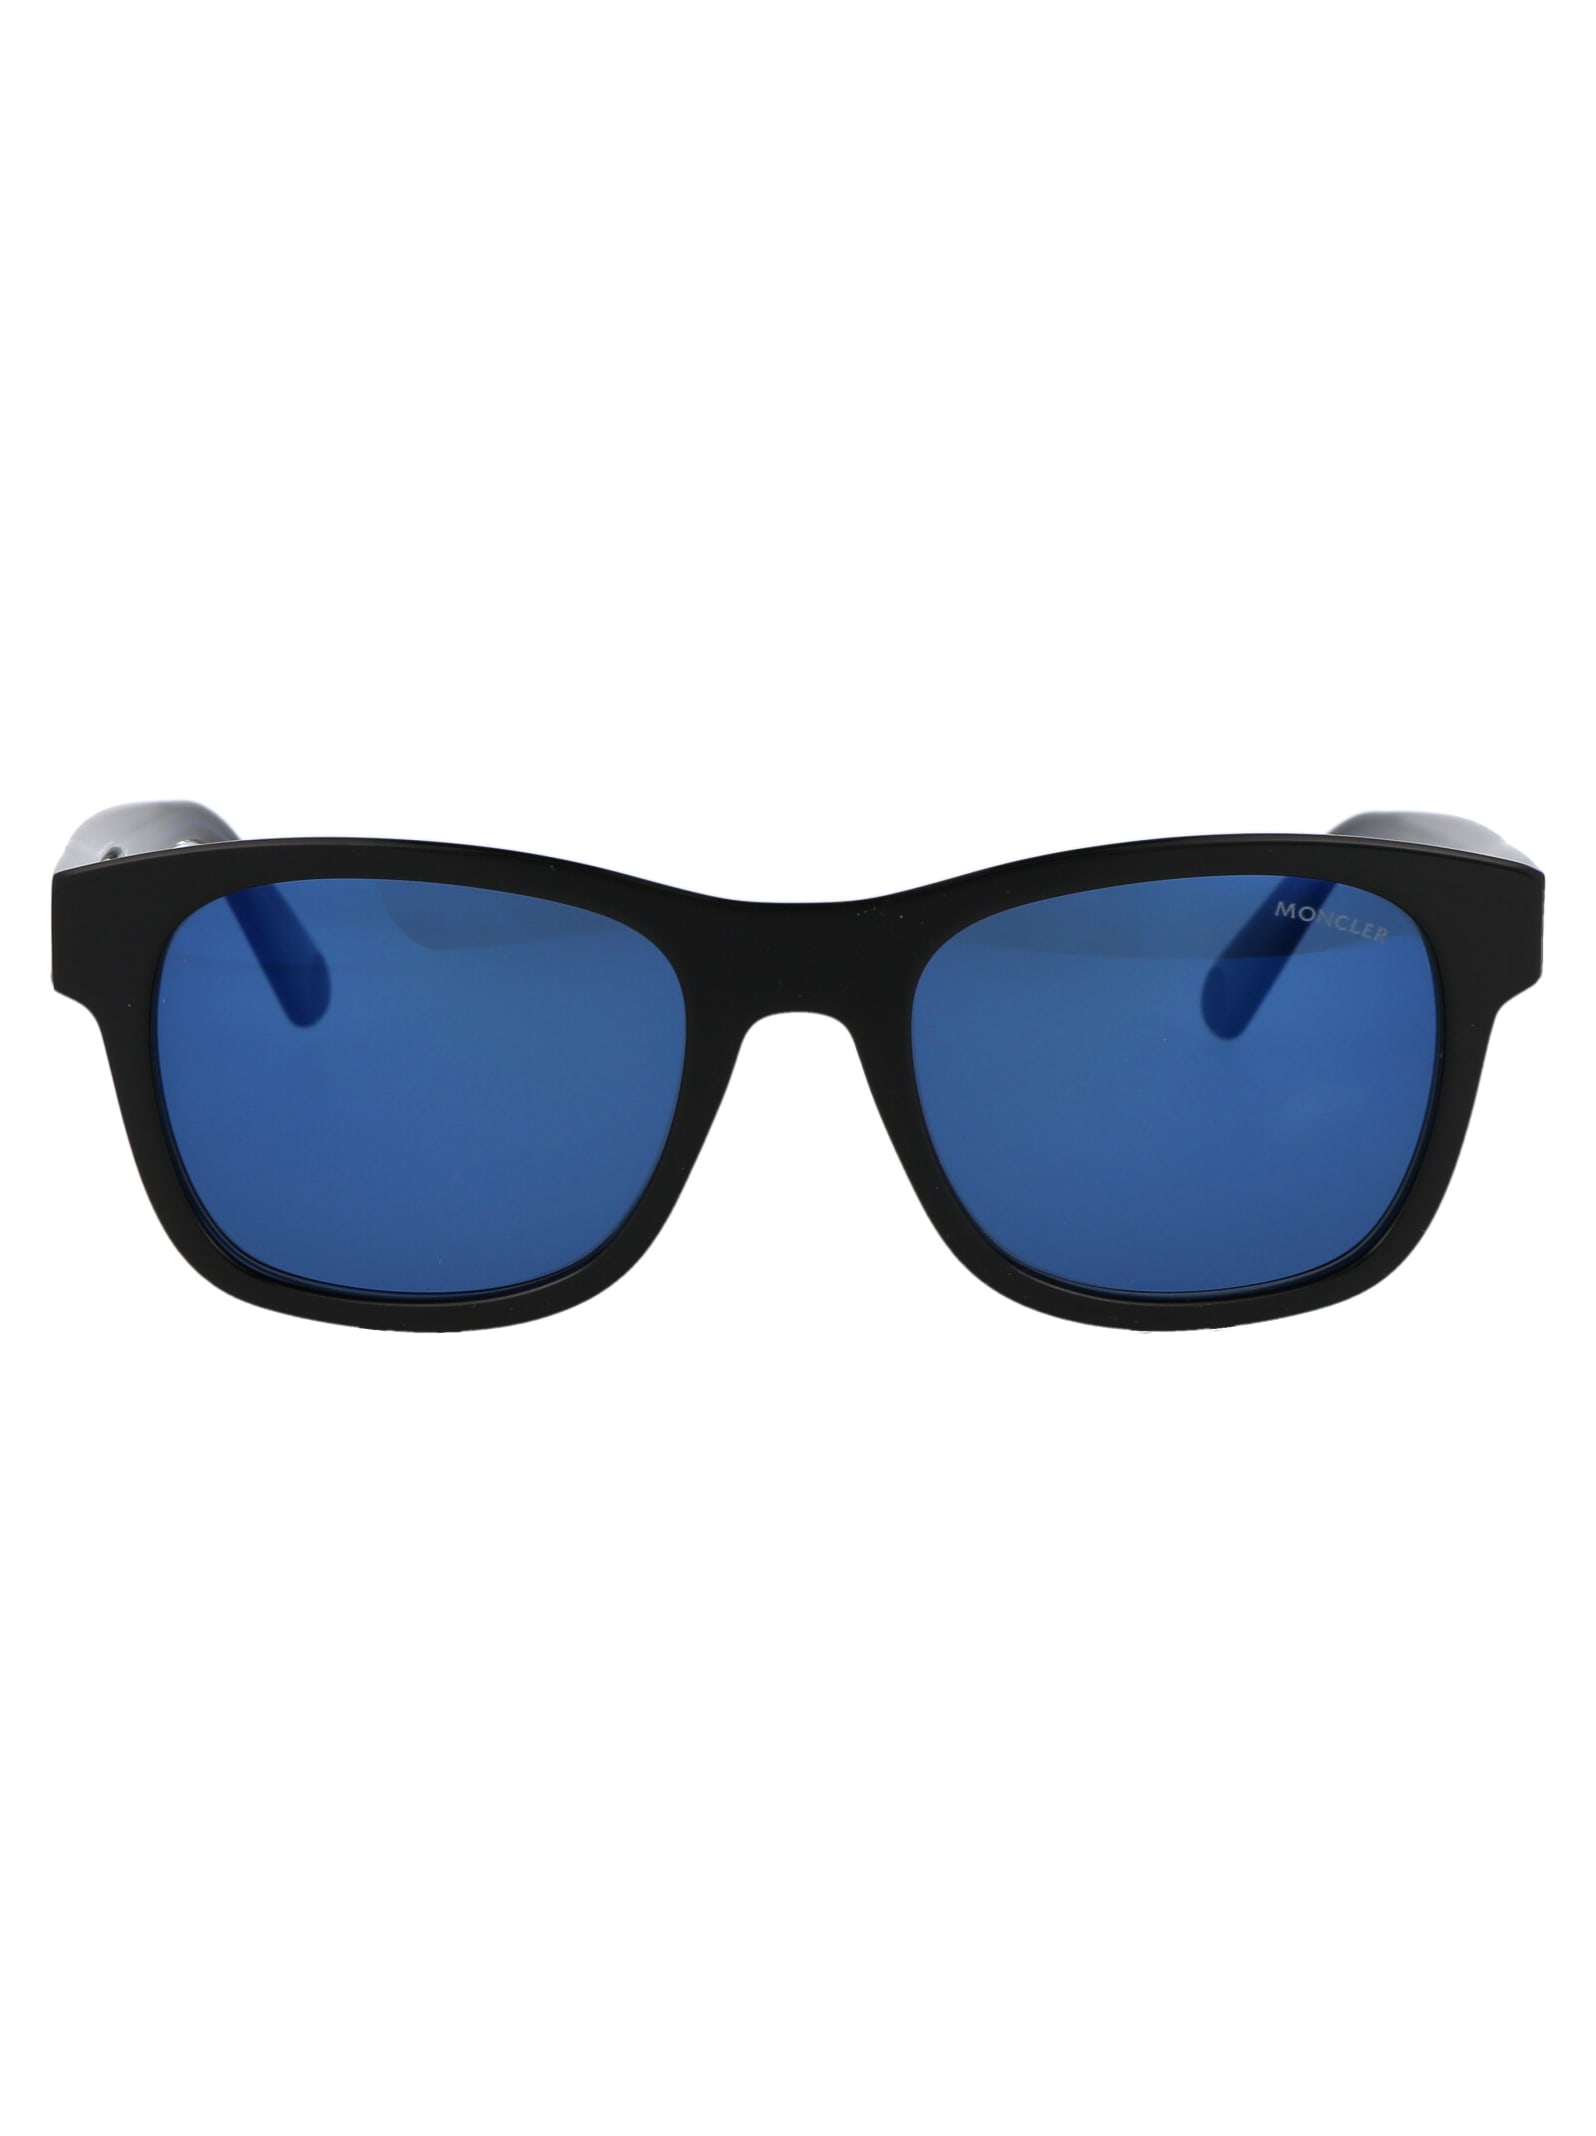 Moncler Eyewear Ml0192 Sunglasses